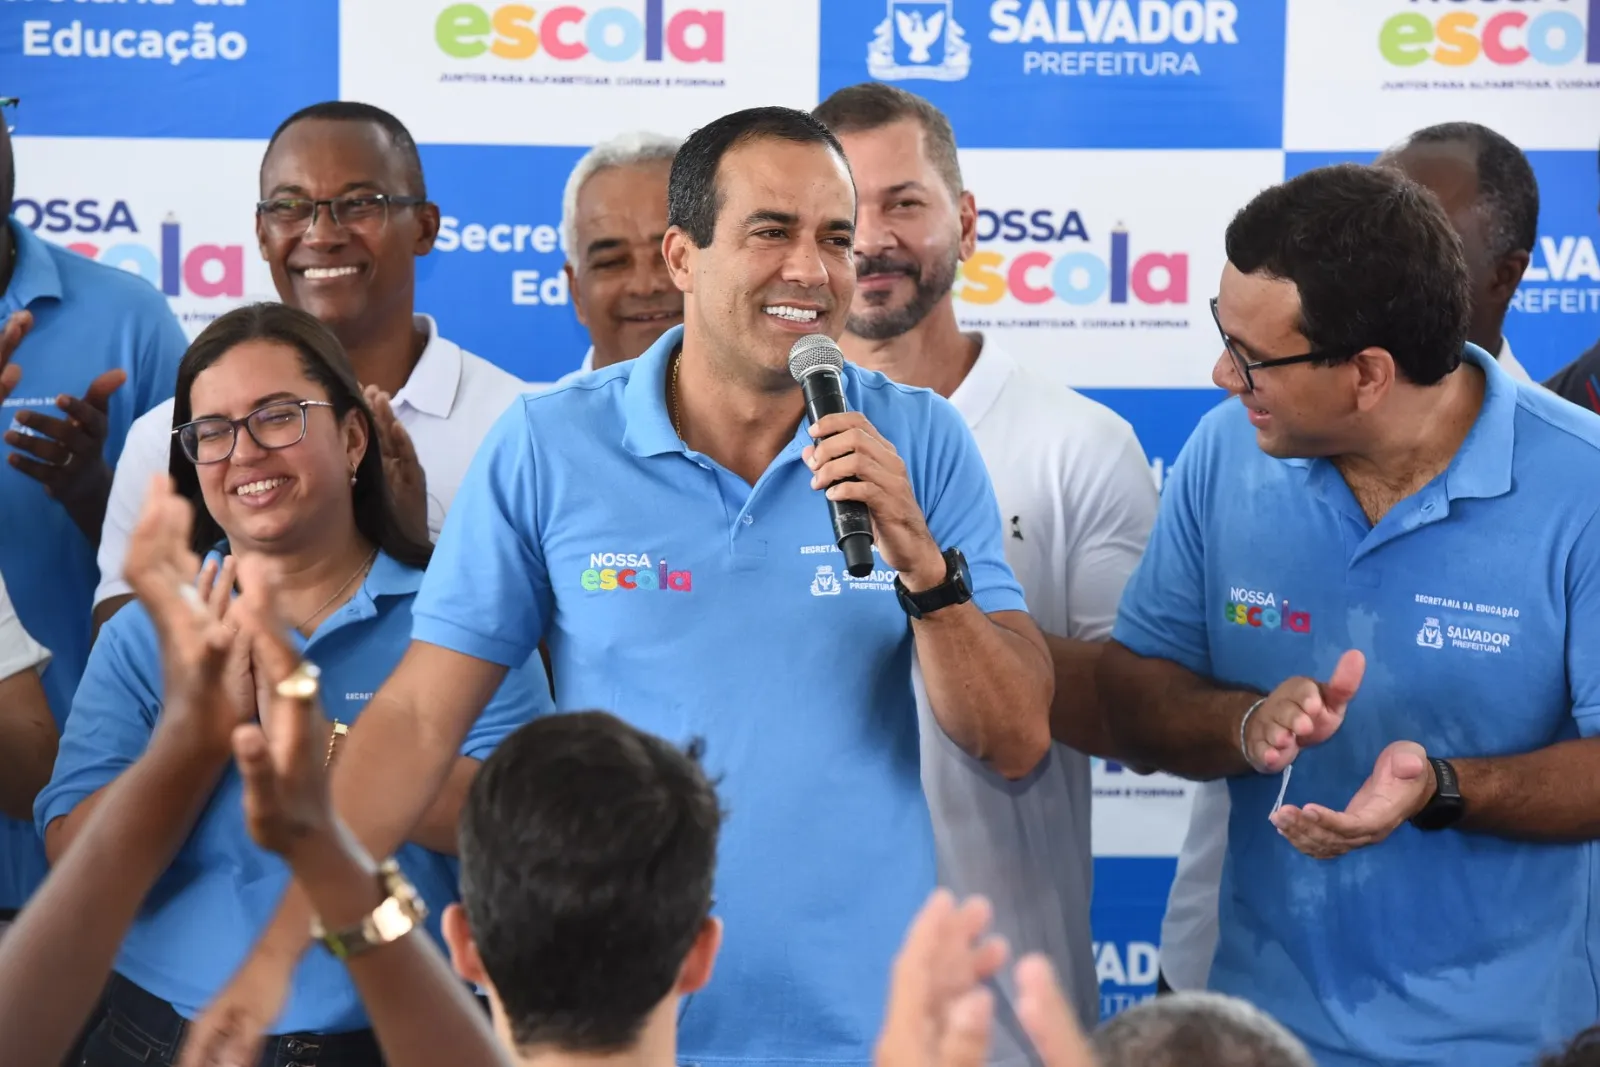 Bruno destacou que a Anita Barbuda inaugura uma nova etapa da modernização da infraestrutura escolar de Salvador